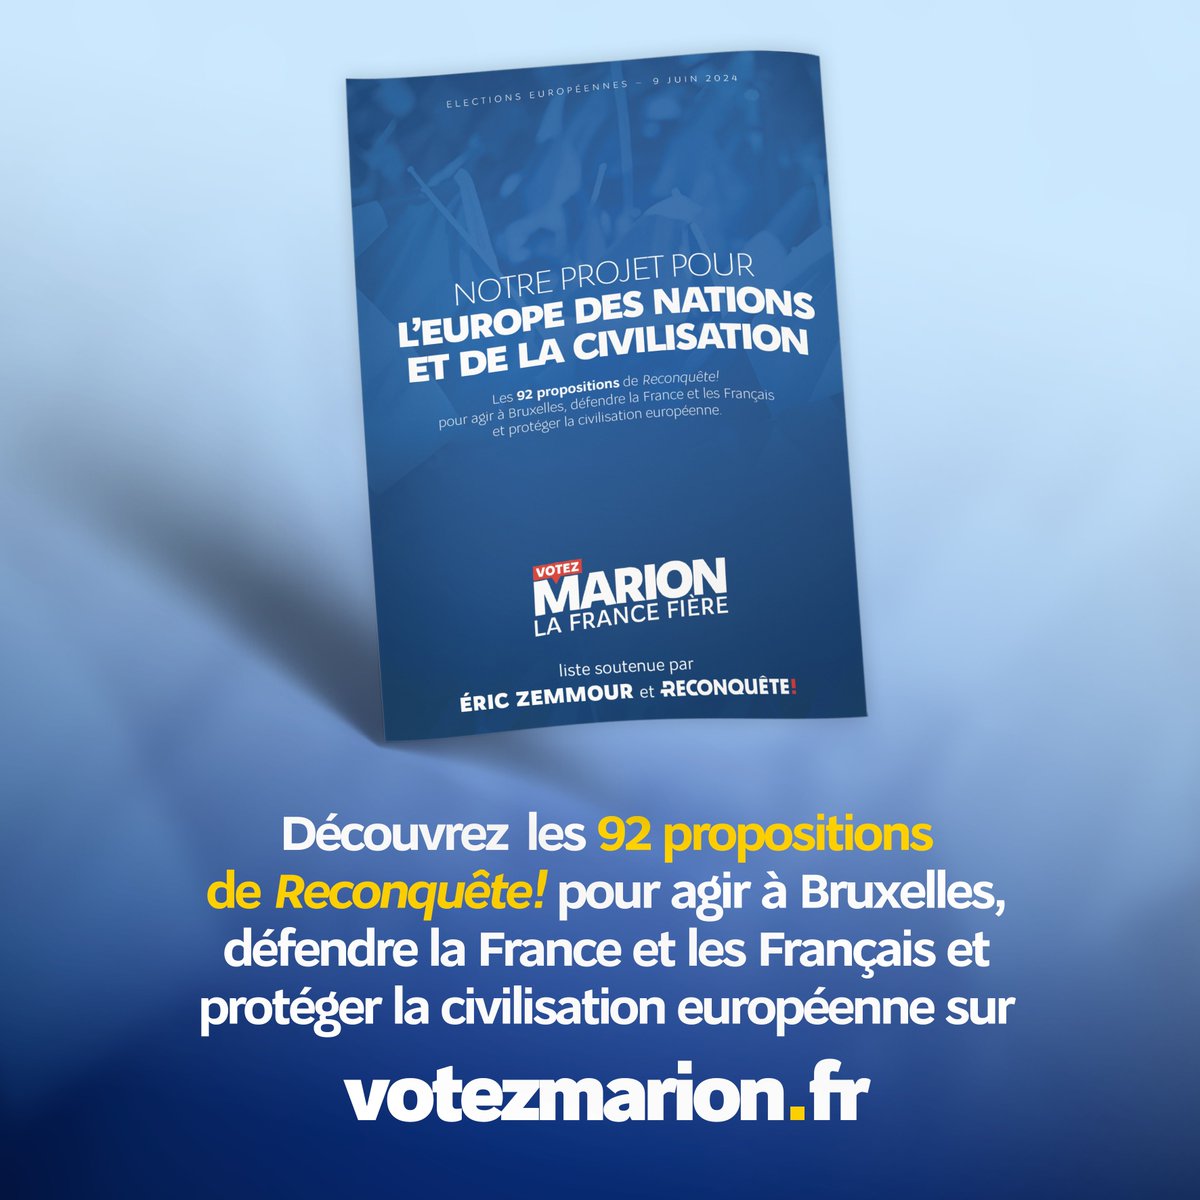 🇨🇵 Vous n'avez pas encore lu le programme de @MarionMarechal ? N'attendez pas, retrouvez-le ici 👉 votezmarion.fr/notre-projet/ #VotezMarion